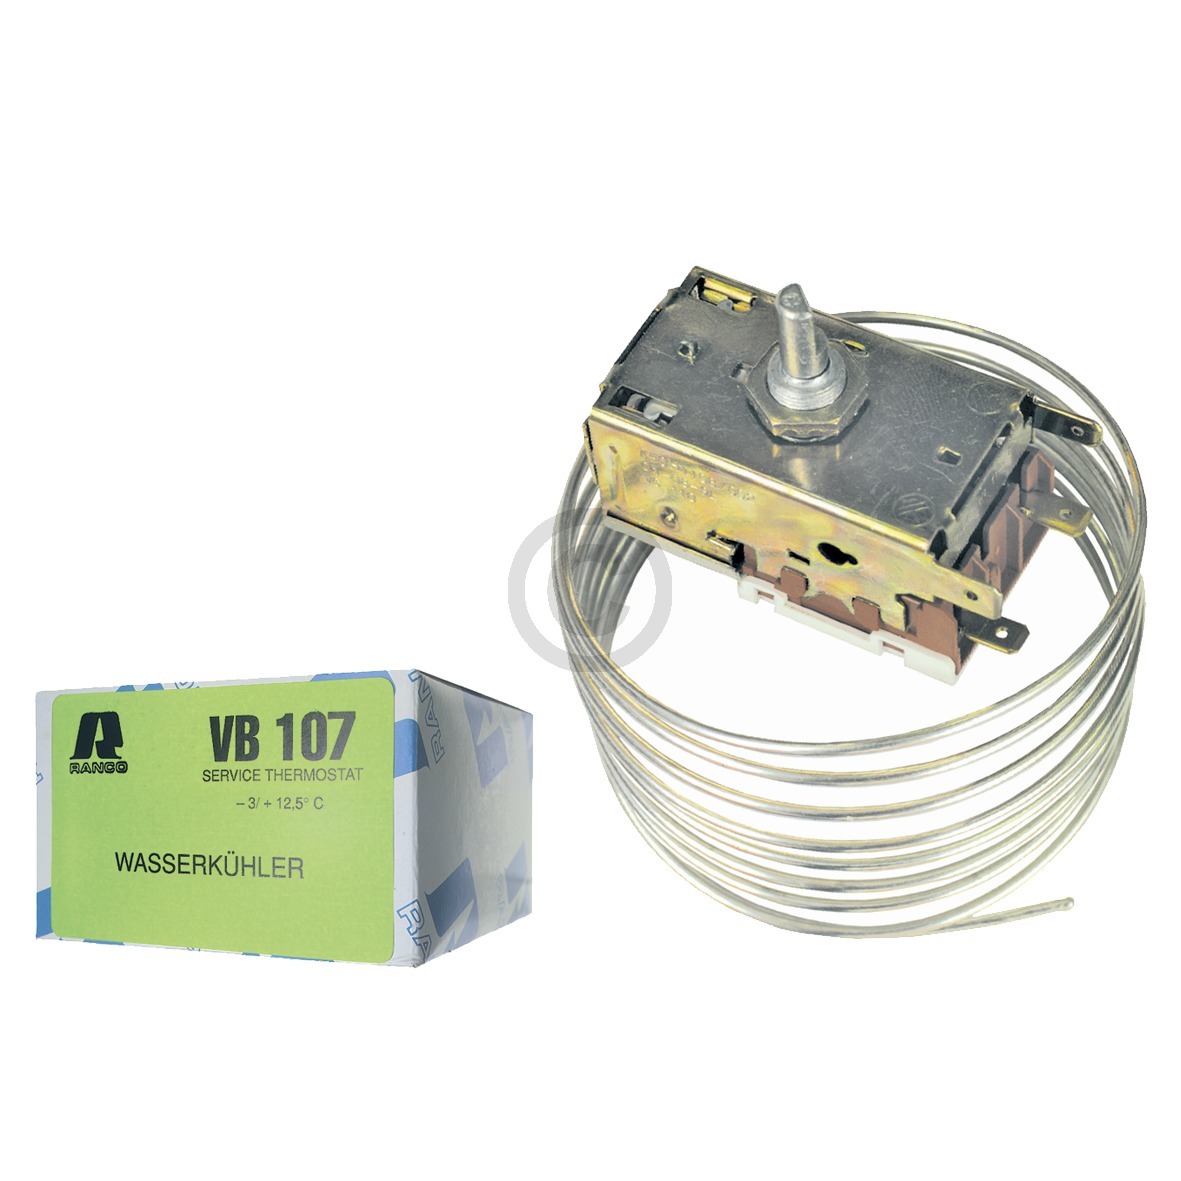 Thermostat Ranco VB107 K50-H1107 Universal zur Wasserkühlung